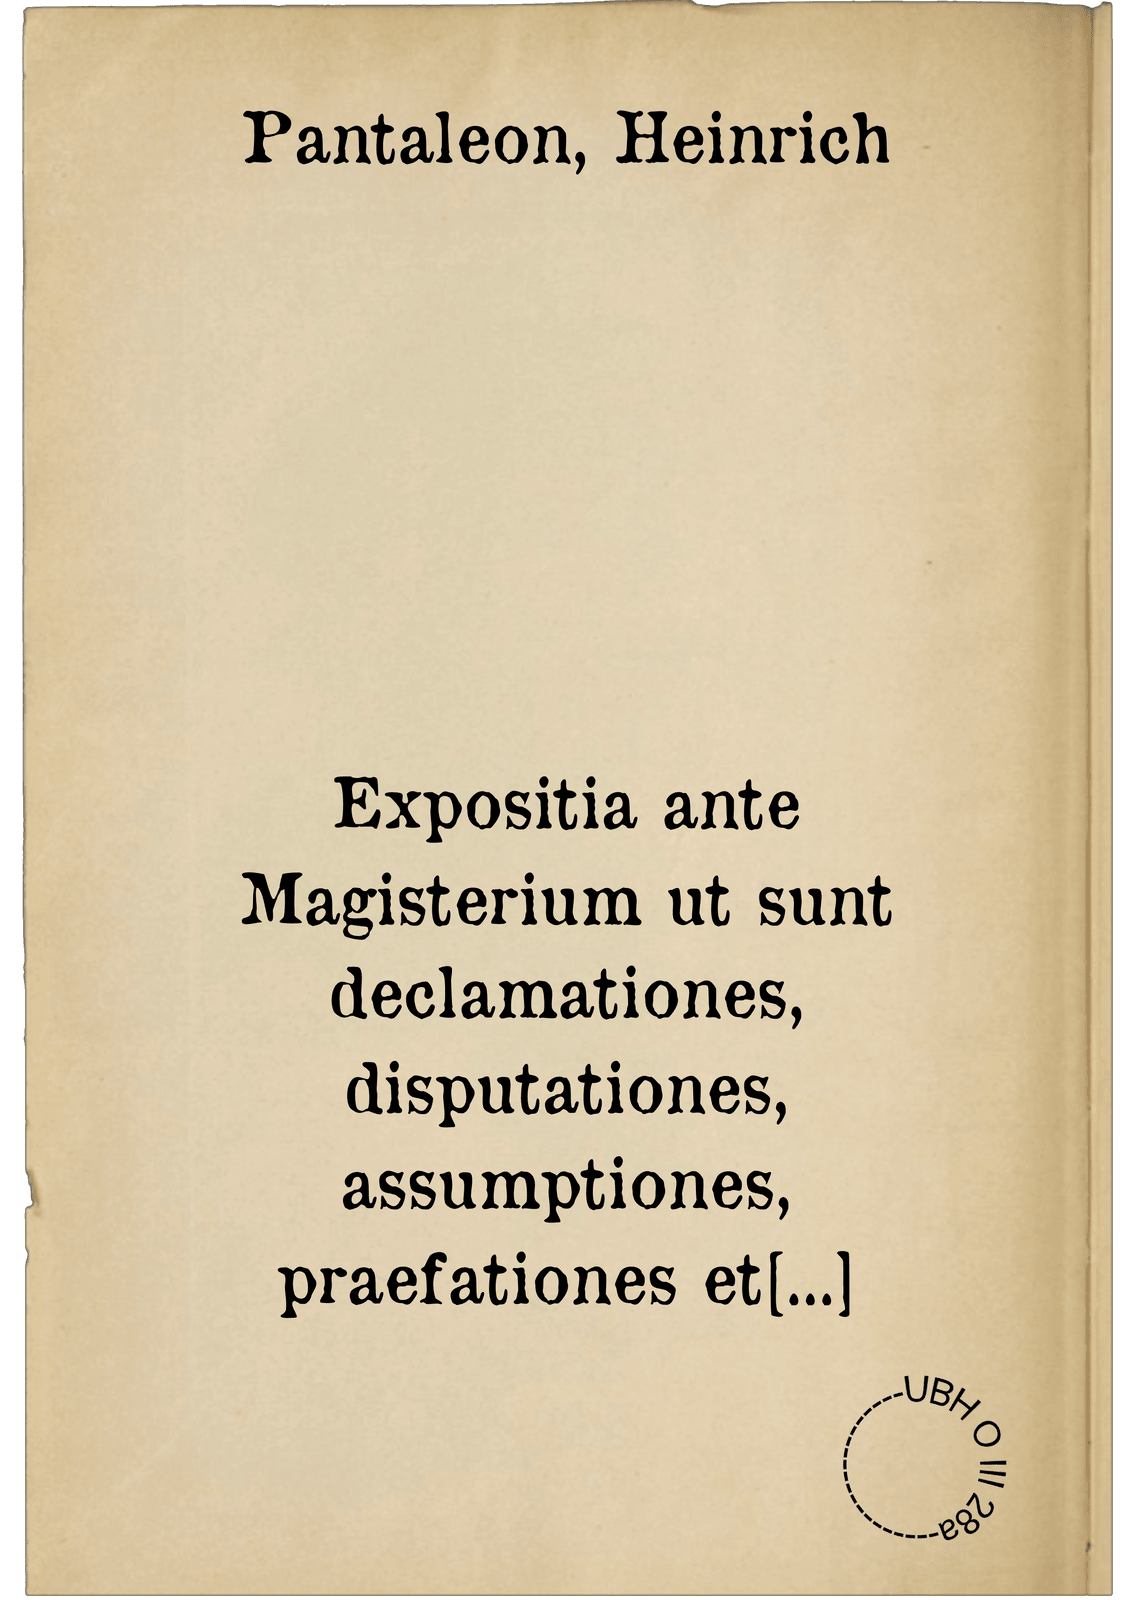 Expositia ante Magisterium ut sunt declamationes, disputationes, assumptiones, praefationes et Epistolae